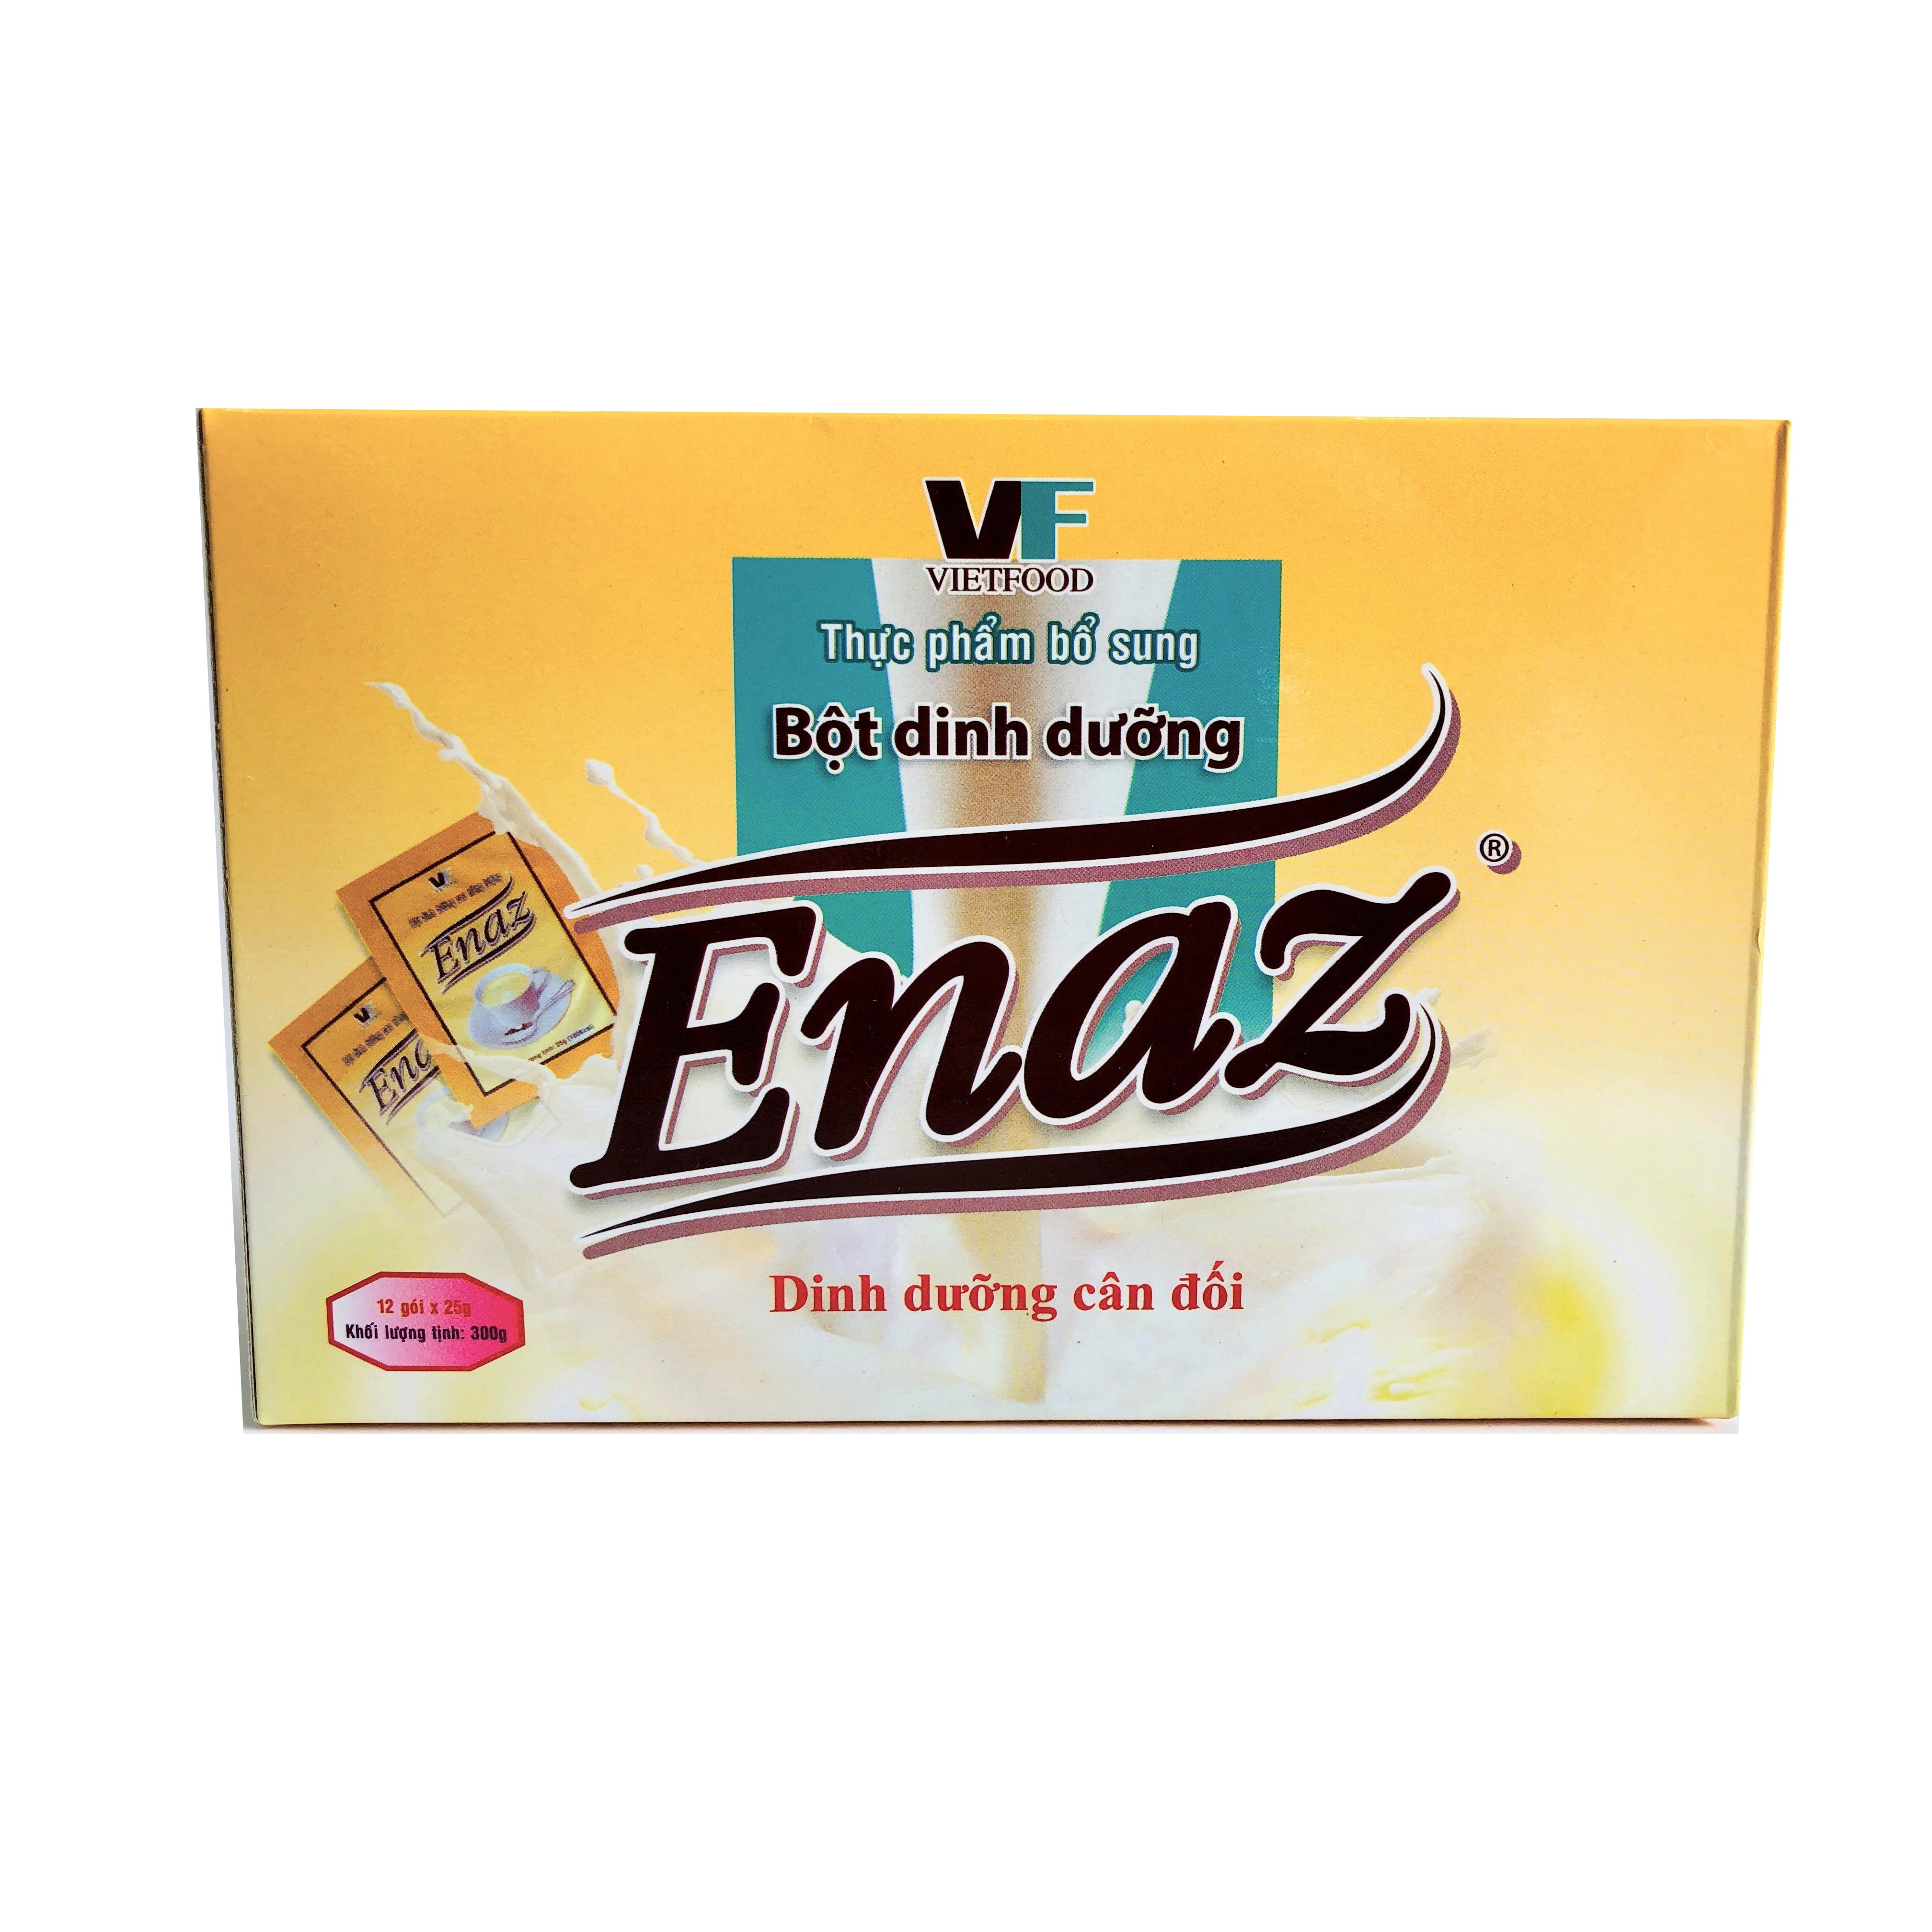 Bột dinh dưỡng cao năng lượng ENAZ (300g / hộp)